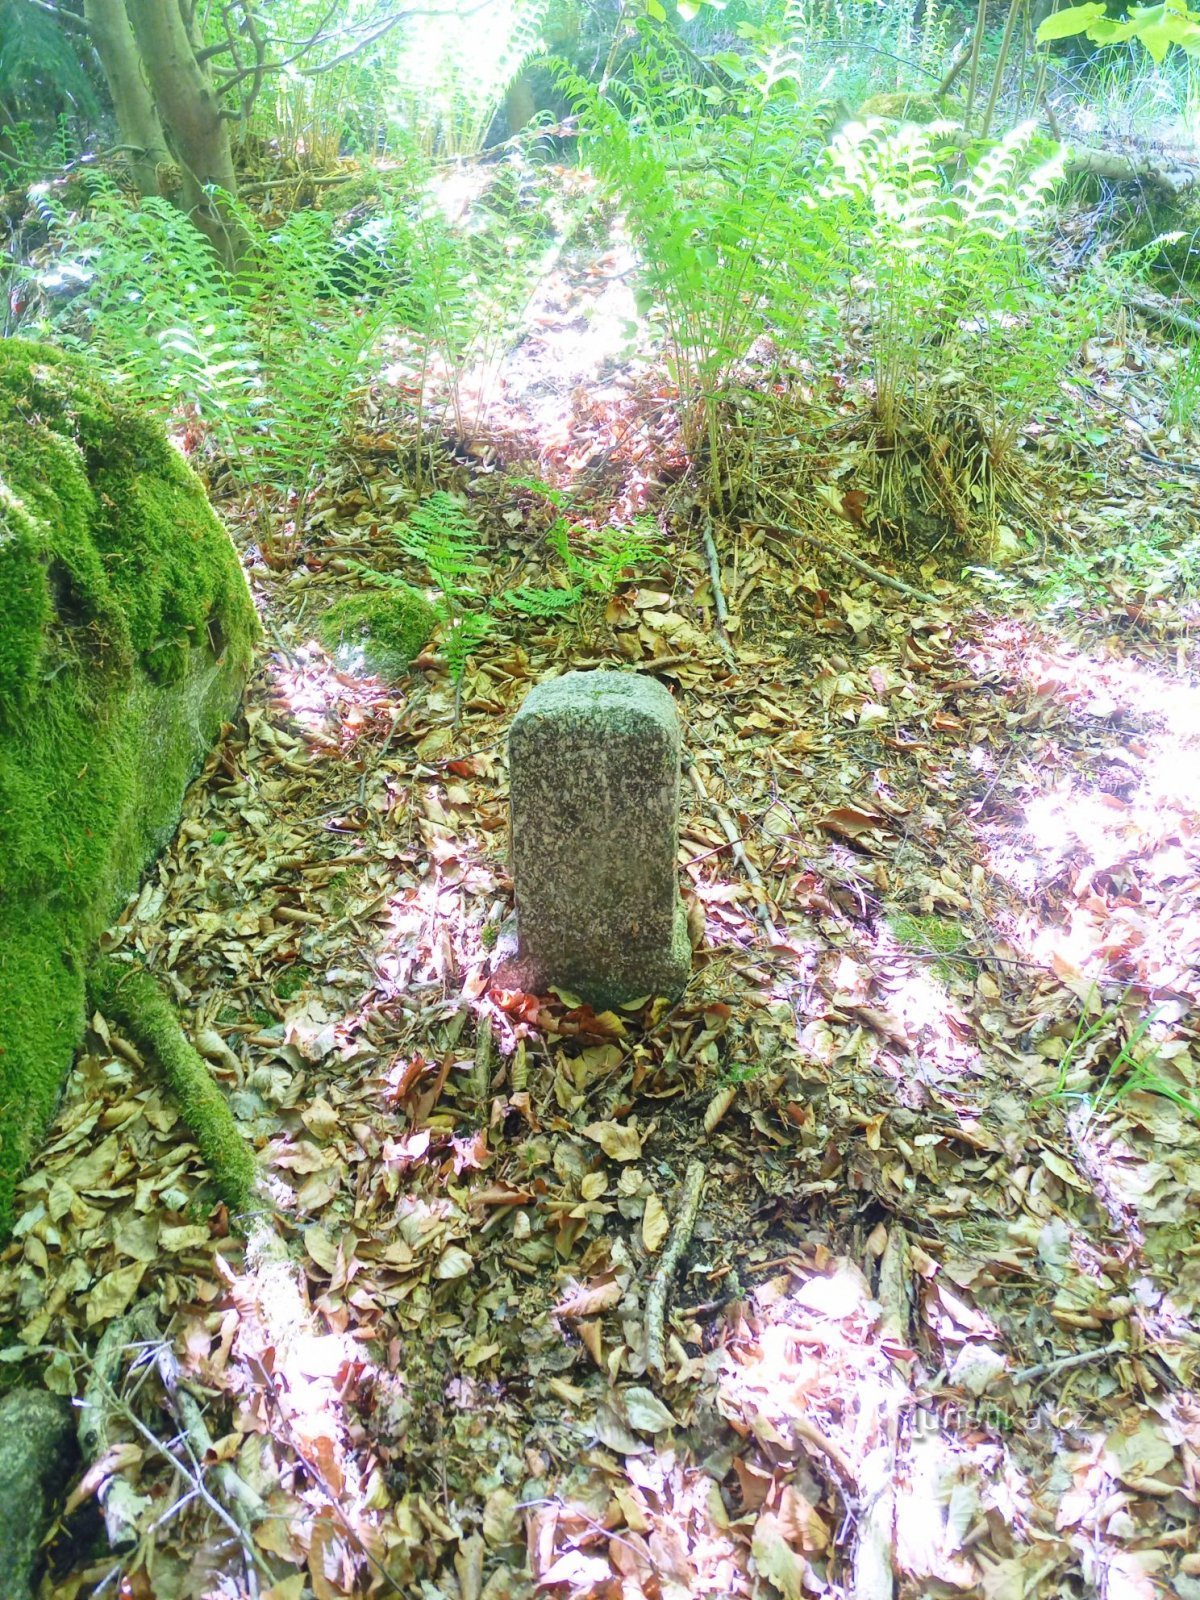 3. Kamienny pomnik z wygrawerowanym krzyżem w lesie